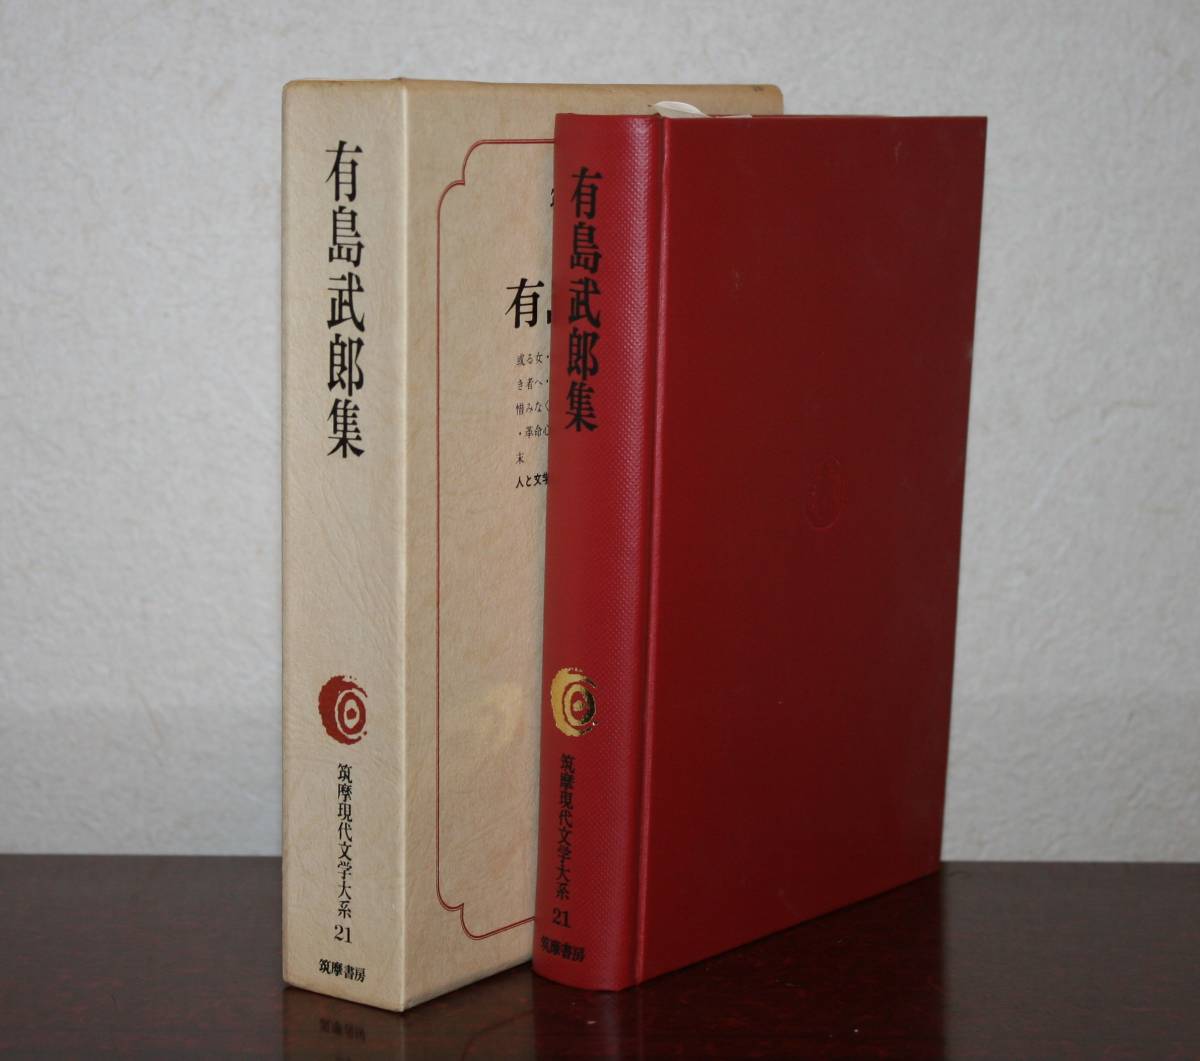 .. настоящее время литература большой серия 21 Arishima Takeo сборник ( есть женщина * итого 11 сборник, содержание фотография NO5)